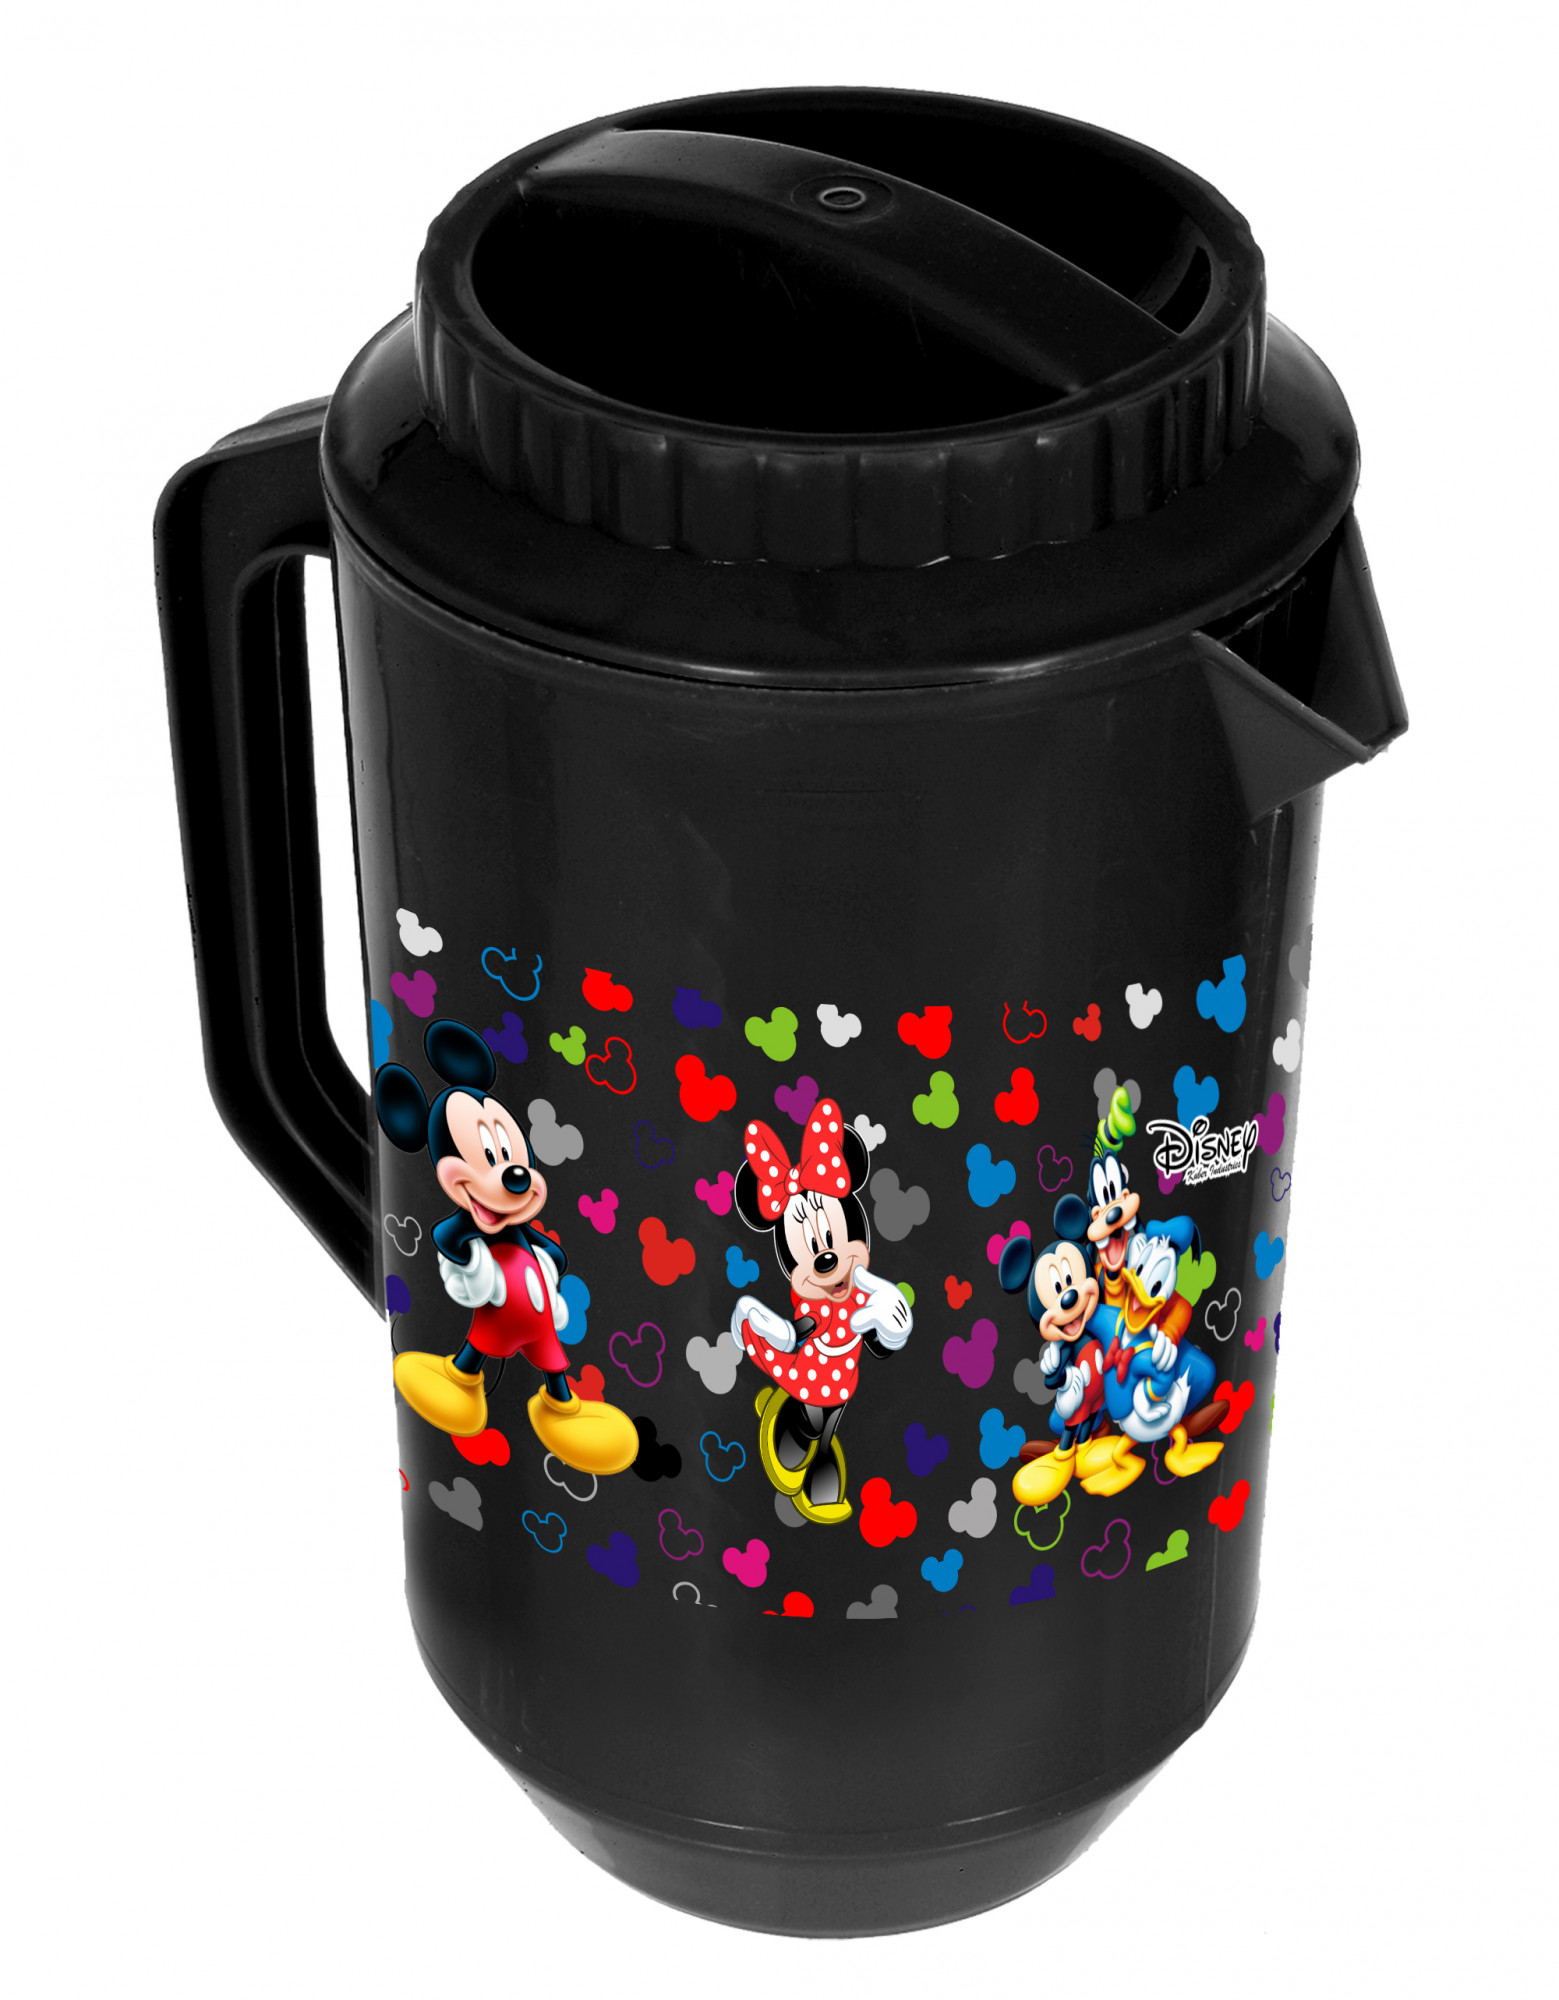 Kuber Industries Disney Team Mickey Print Unbreakable Multipurpose Plastic Water & Juice Jug With Lid,2 Ltr (Set Of 2, Pink & Black)